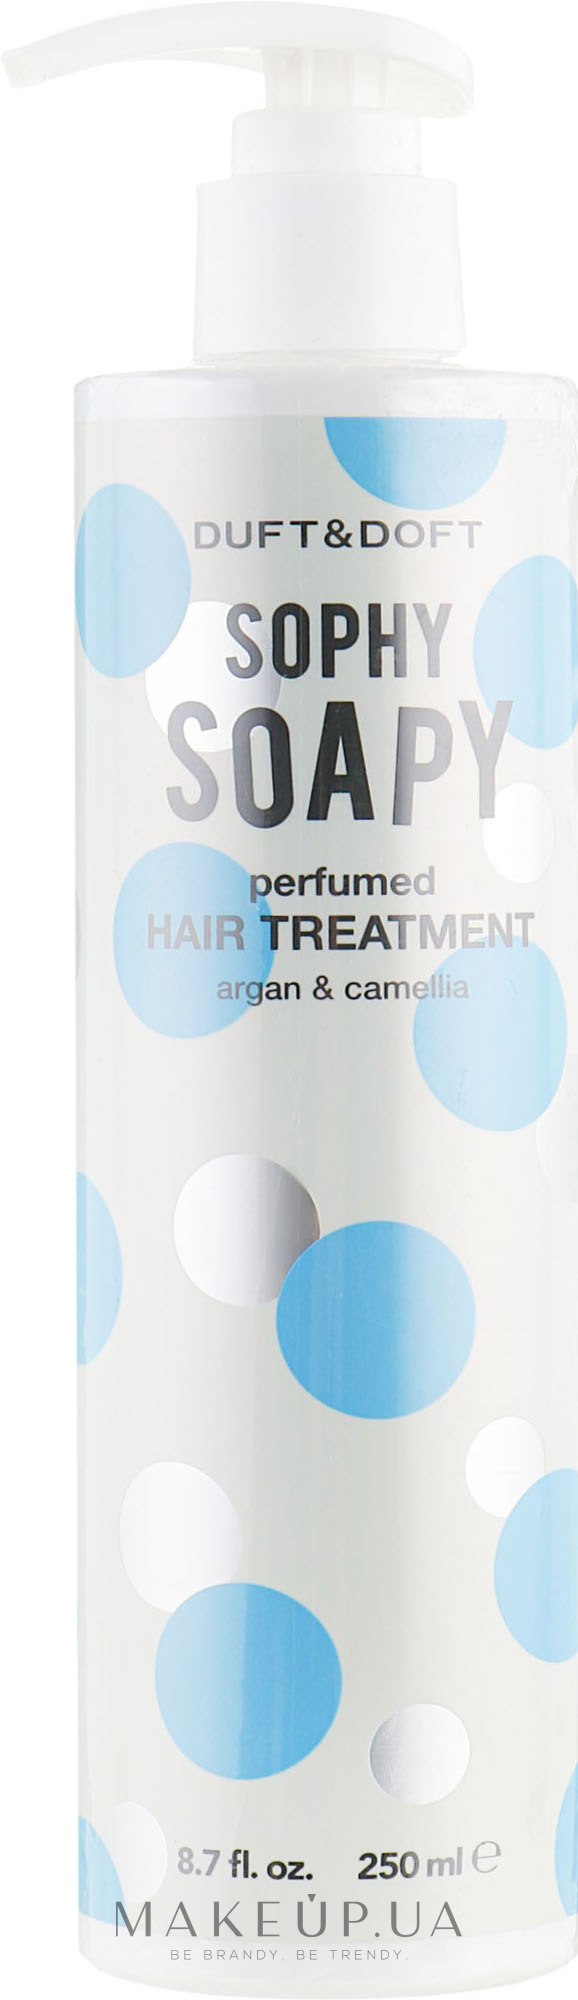 Відновлювальний комплекс для волосся - Duft & Doft Sophy Soapy Perfumed Hair Treatment — фото 250ml